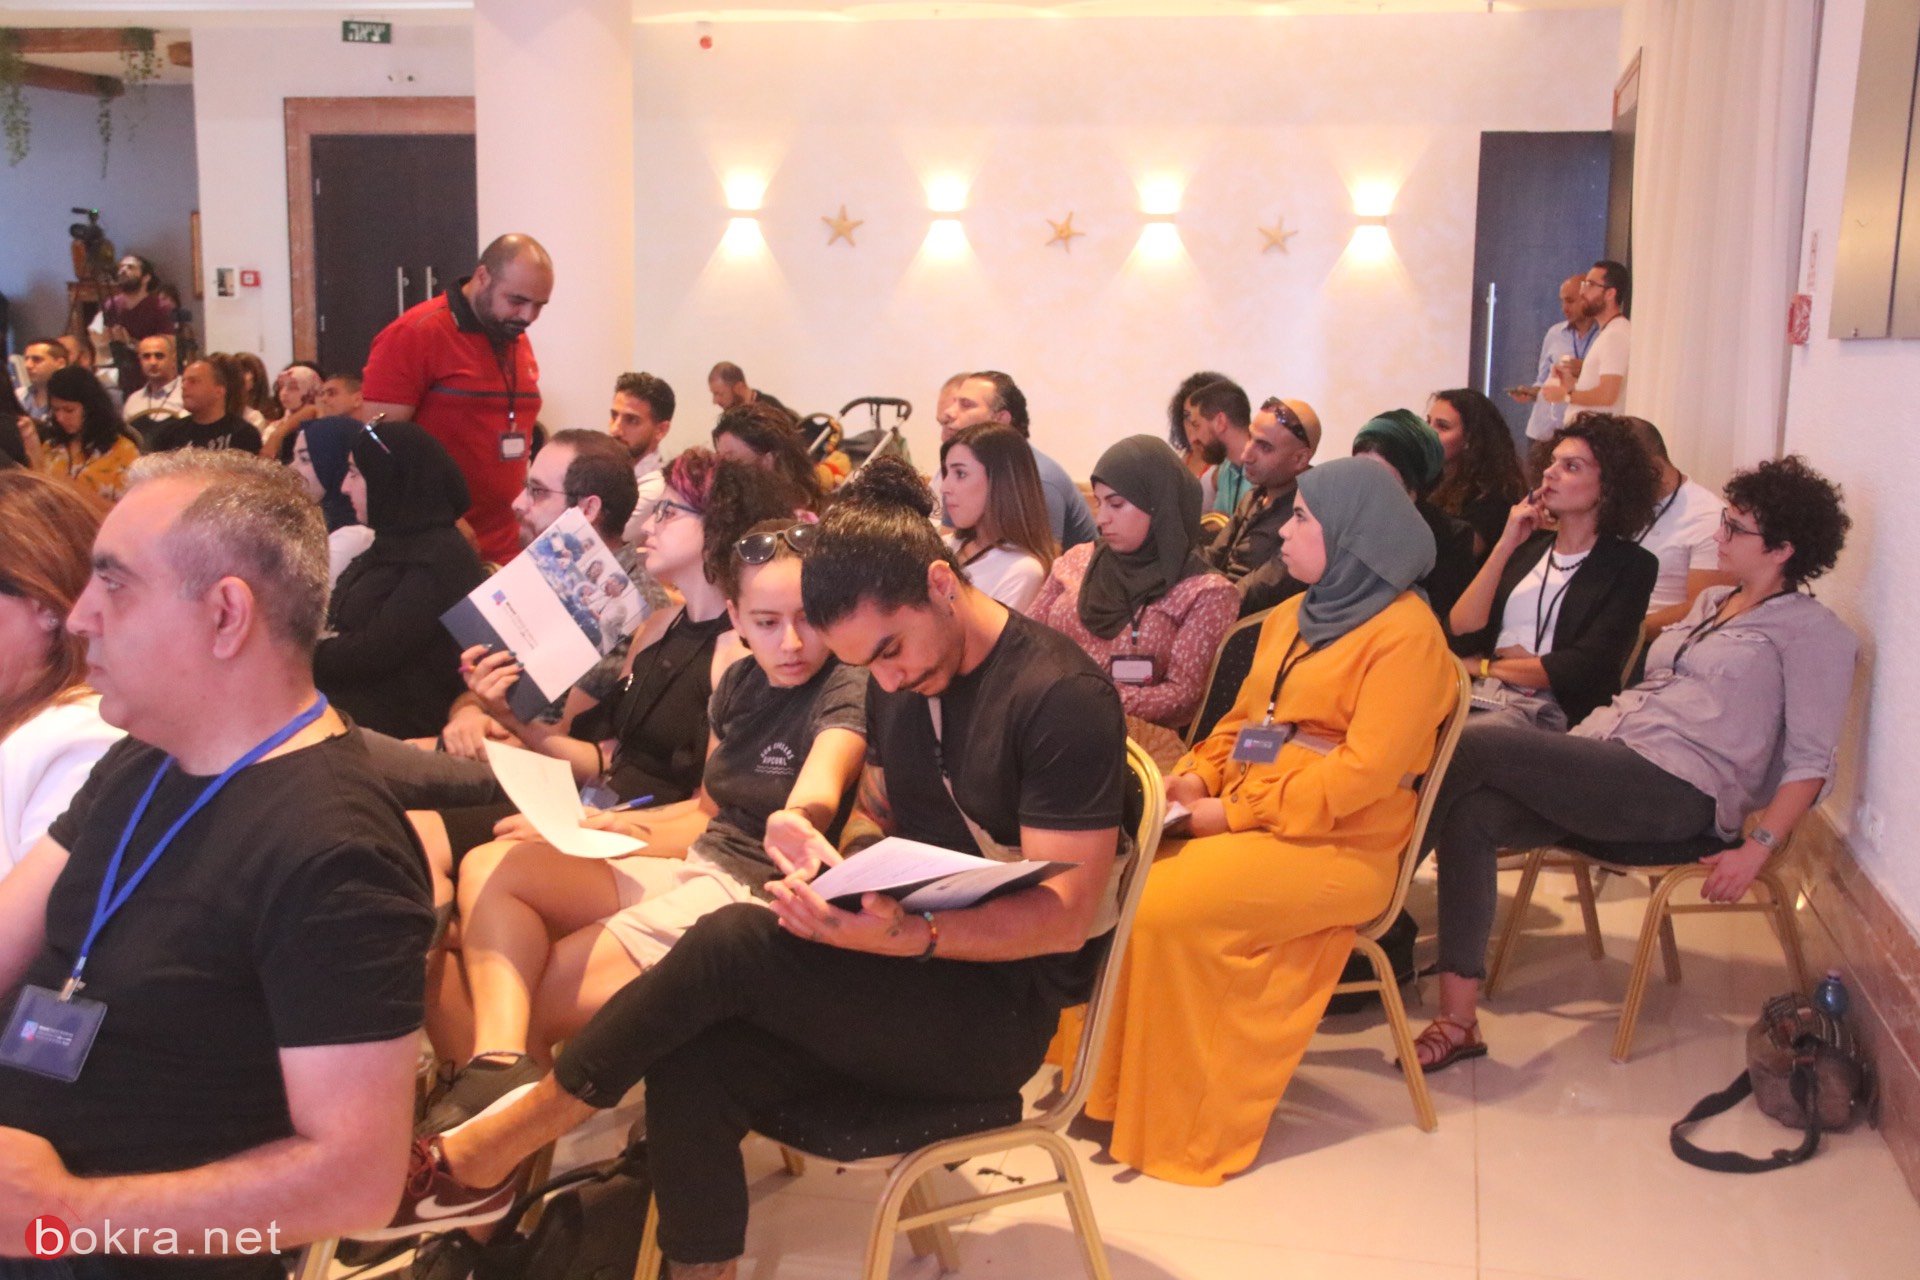 حيفا: مشاركة واسعة في مؤتمر "وصول" حول آخر التطورات في قنوات التسويق الرقمي-24